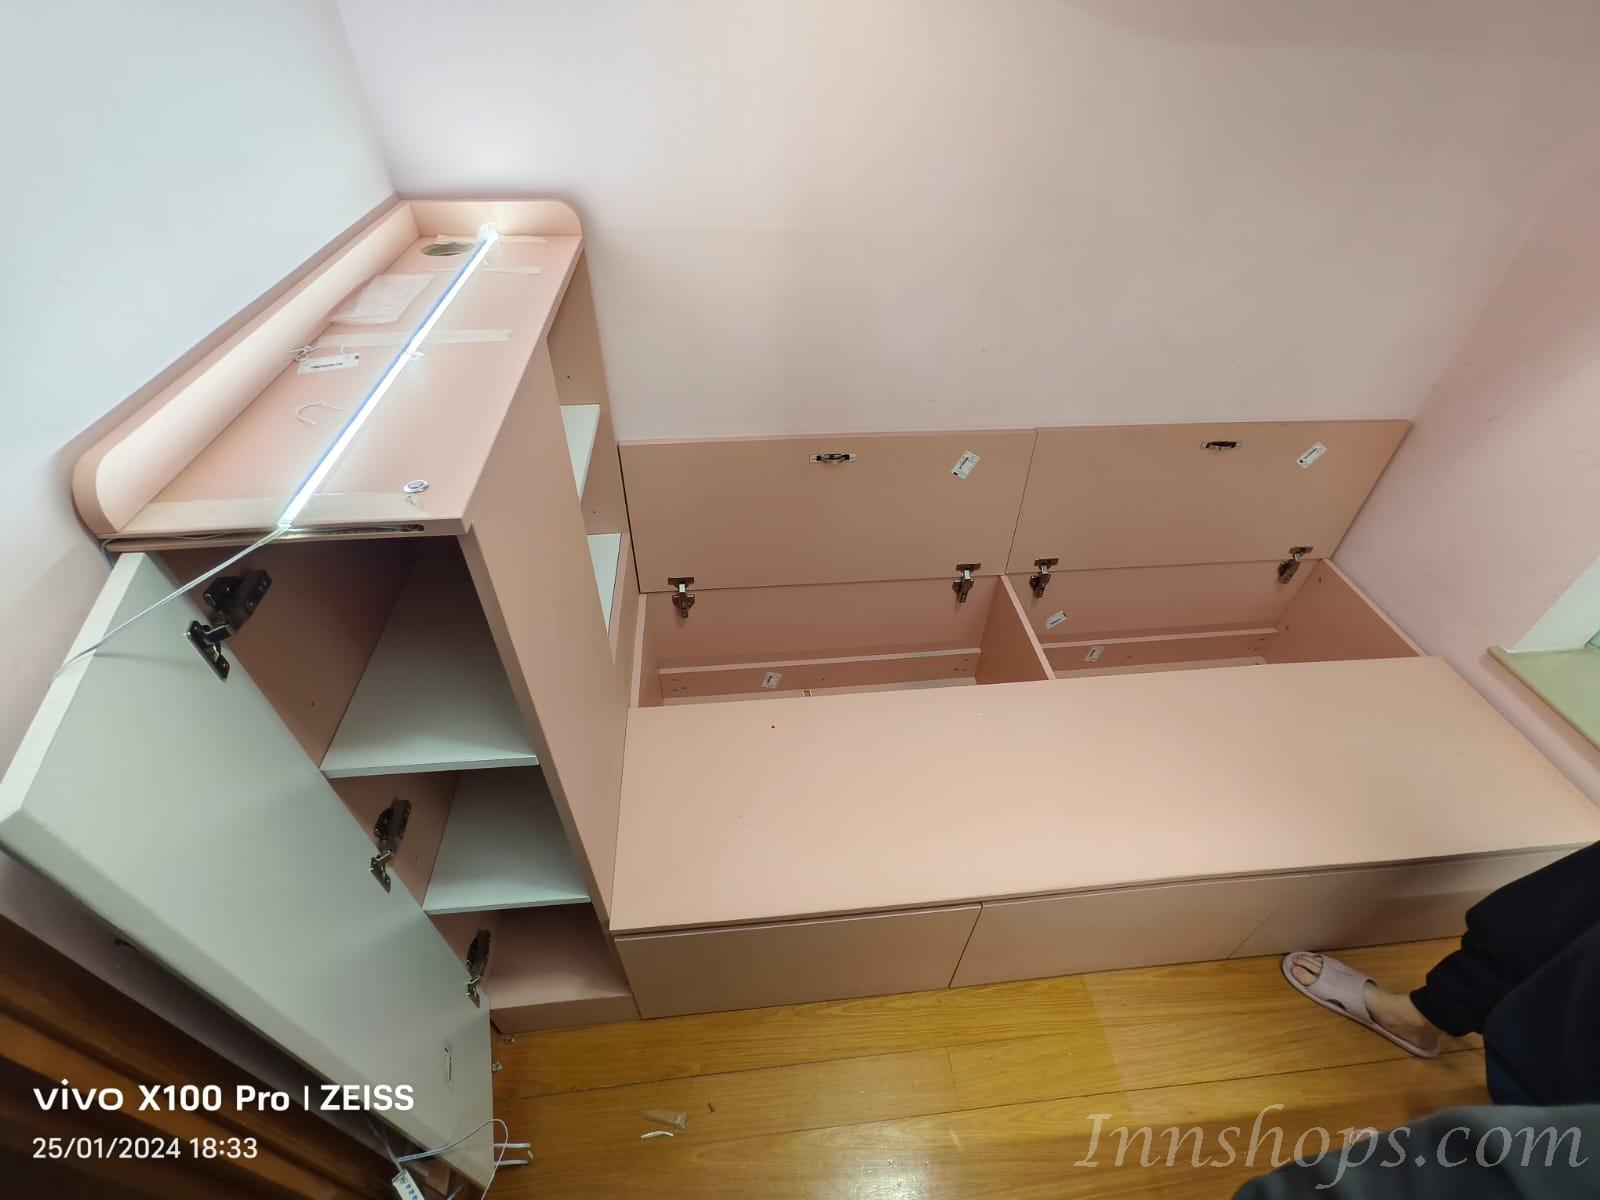 訂造傢俬 單人床連吊櫃 雙人床儲物床  *可自訂呎吋 (IS9096)